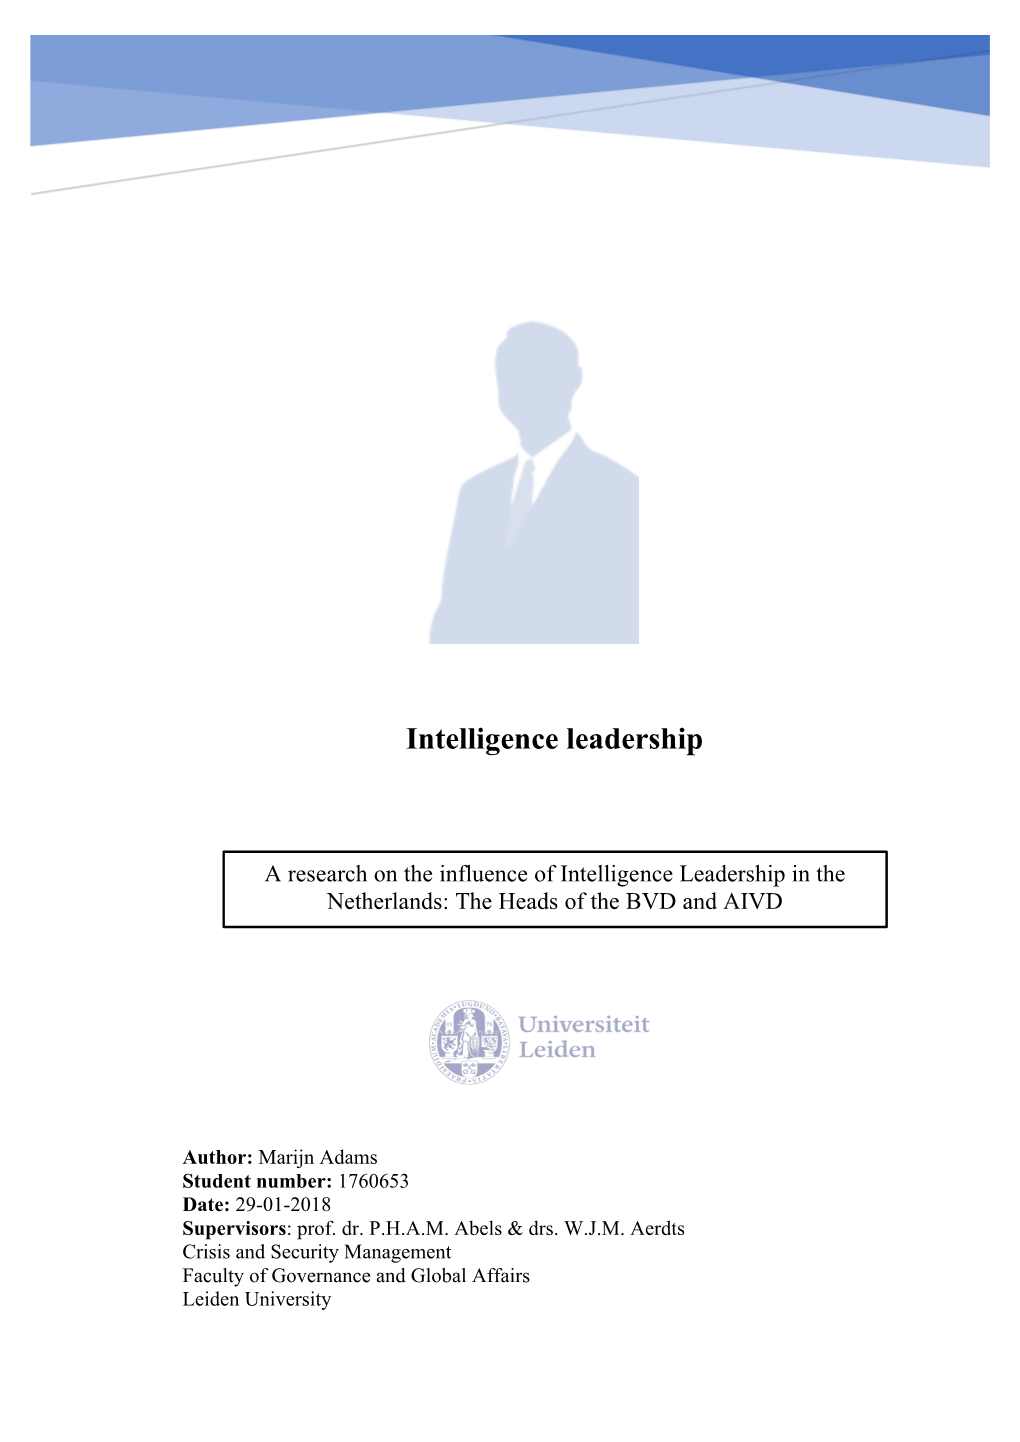 Intelligence Leadership